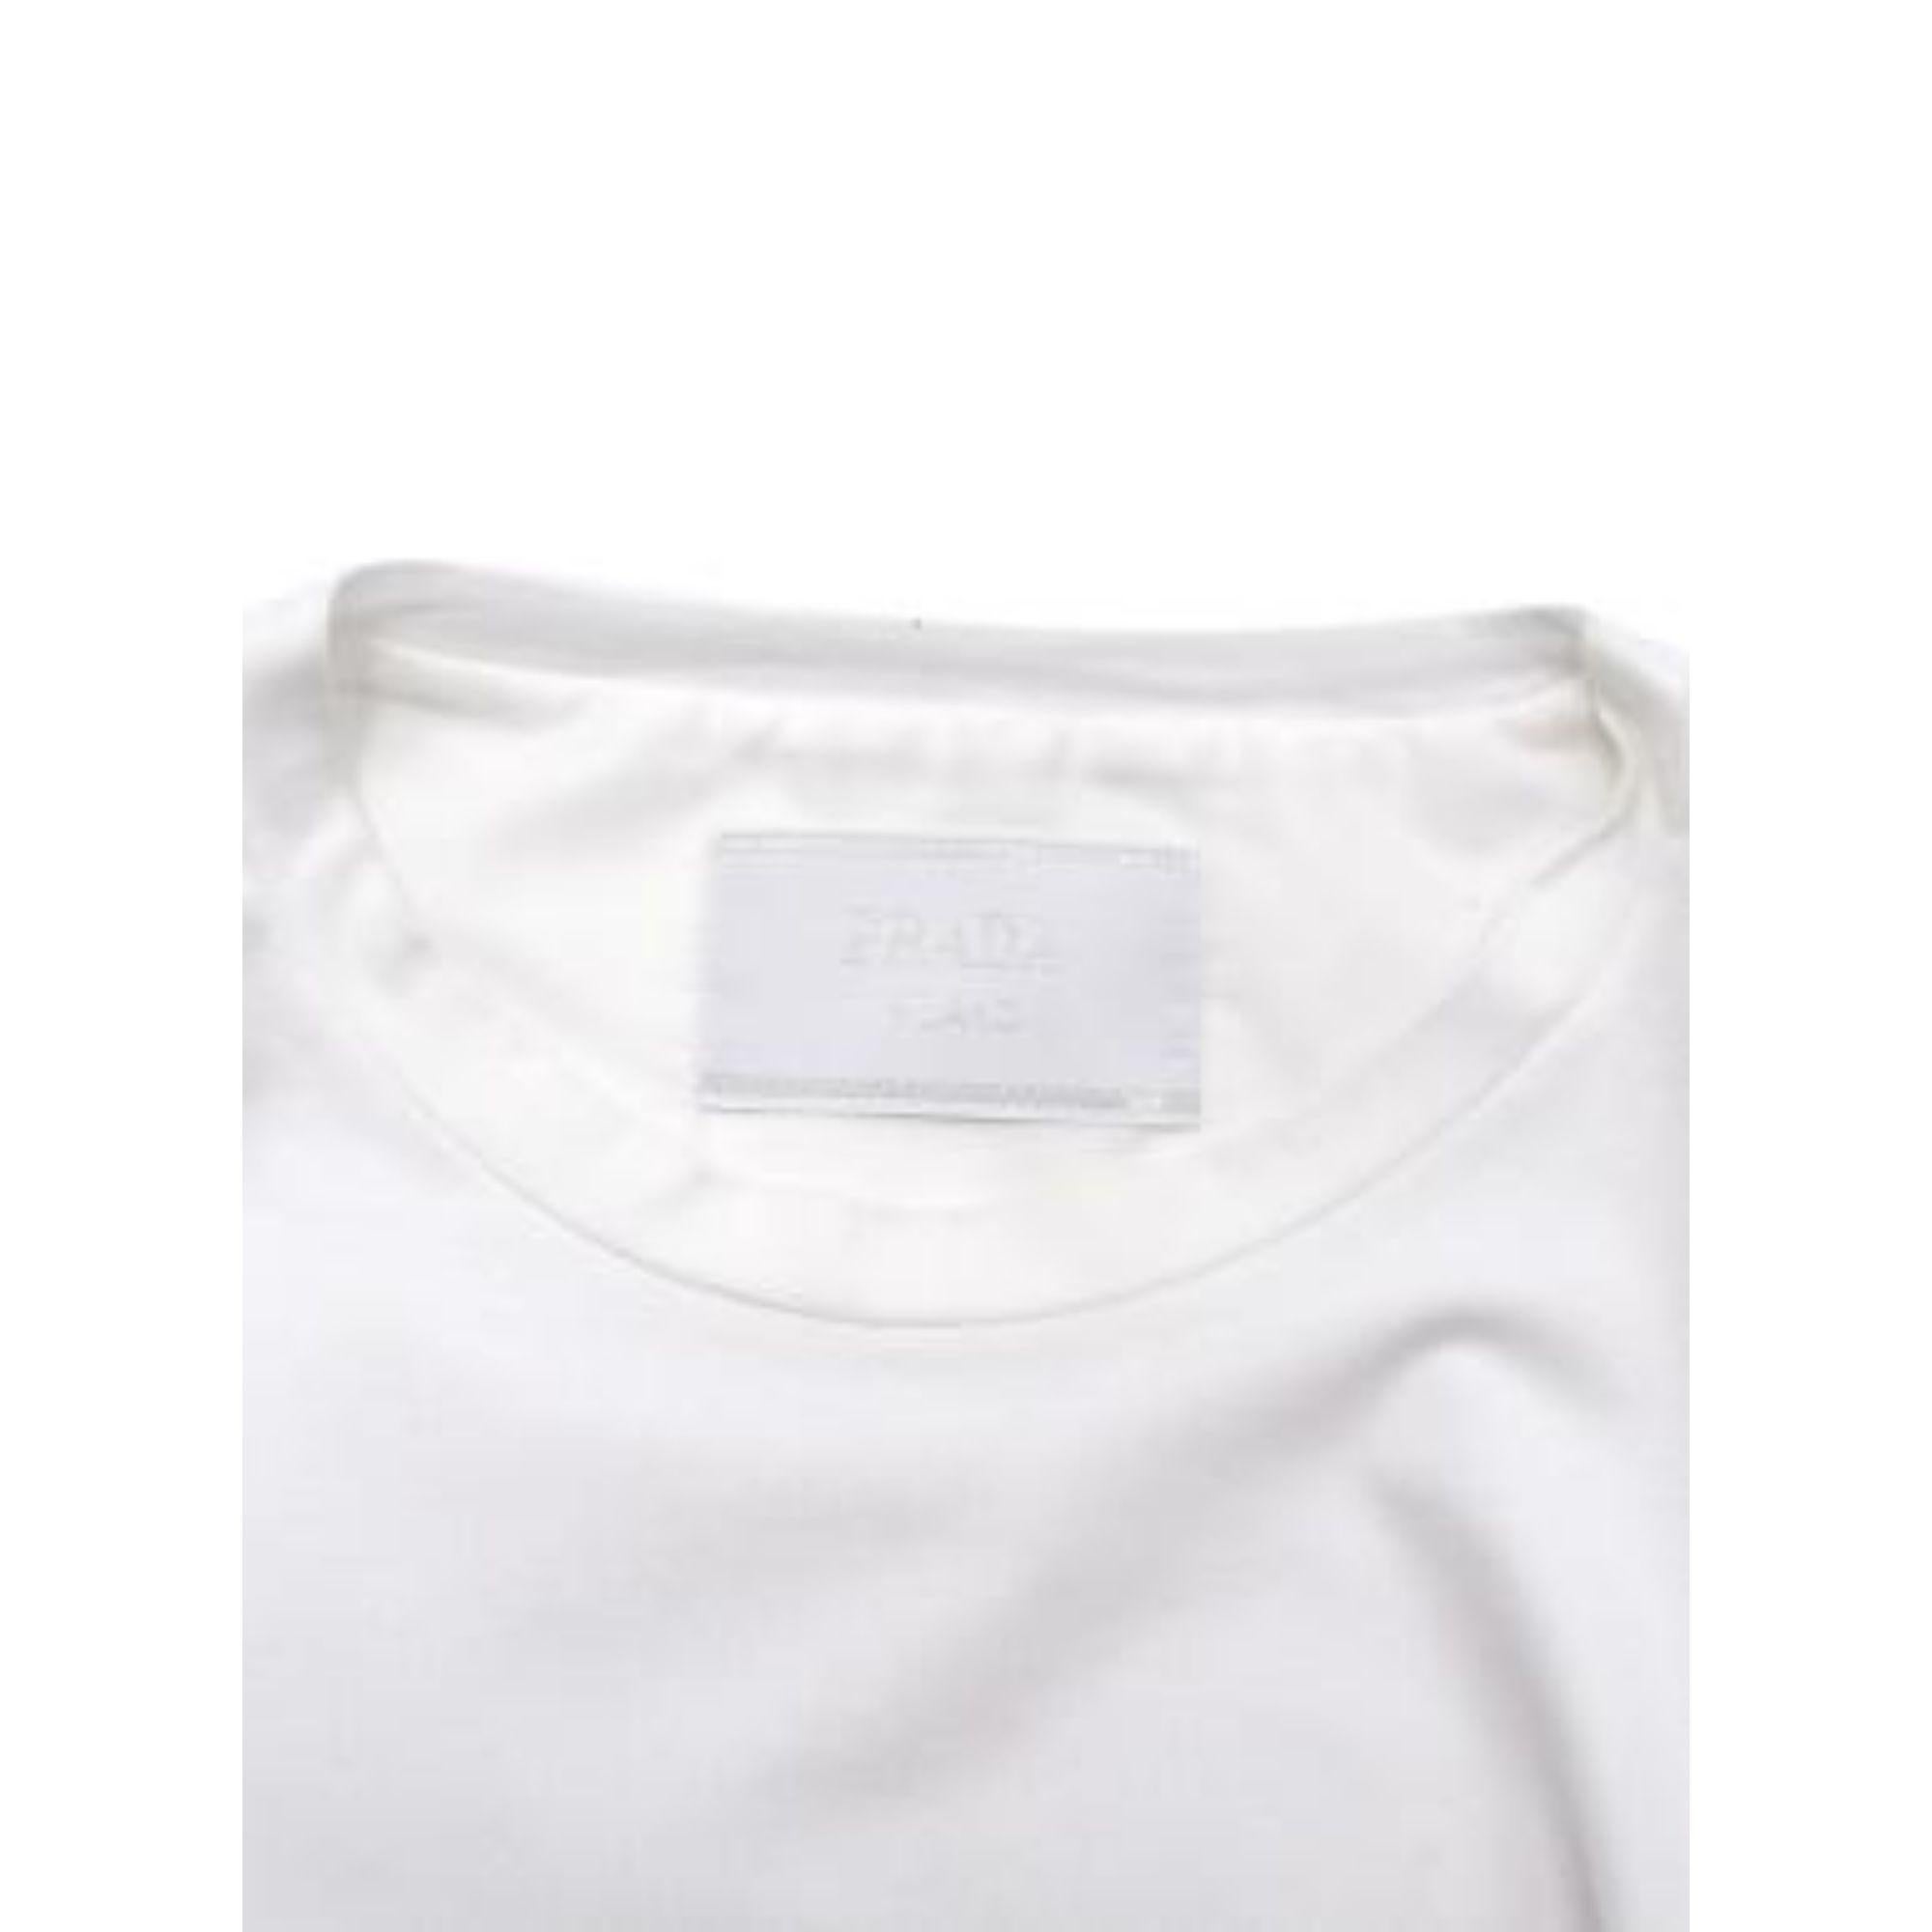 Prada White Cotton T-shirt with Nylon Pocket For Sale 2